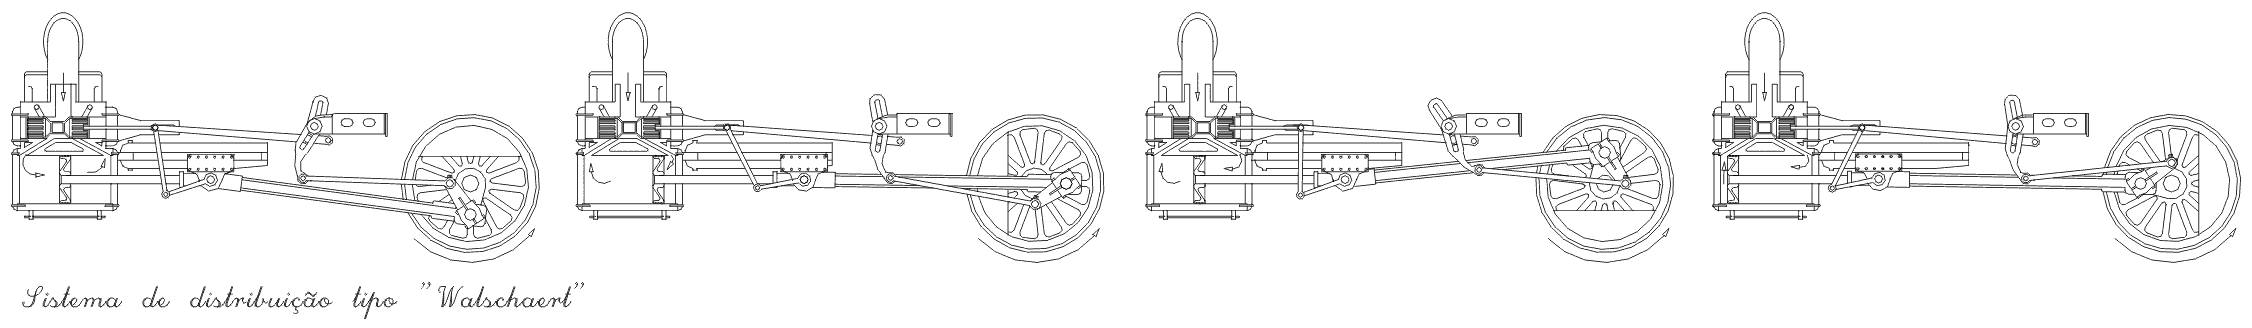 Desenhos detalhados do sistema de distribuição da locomotiva Mikado